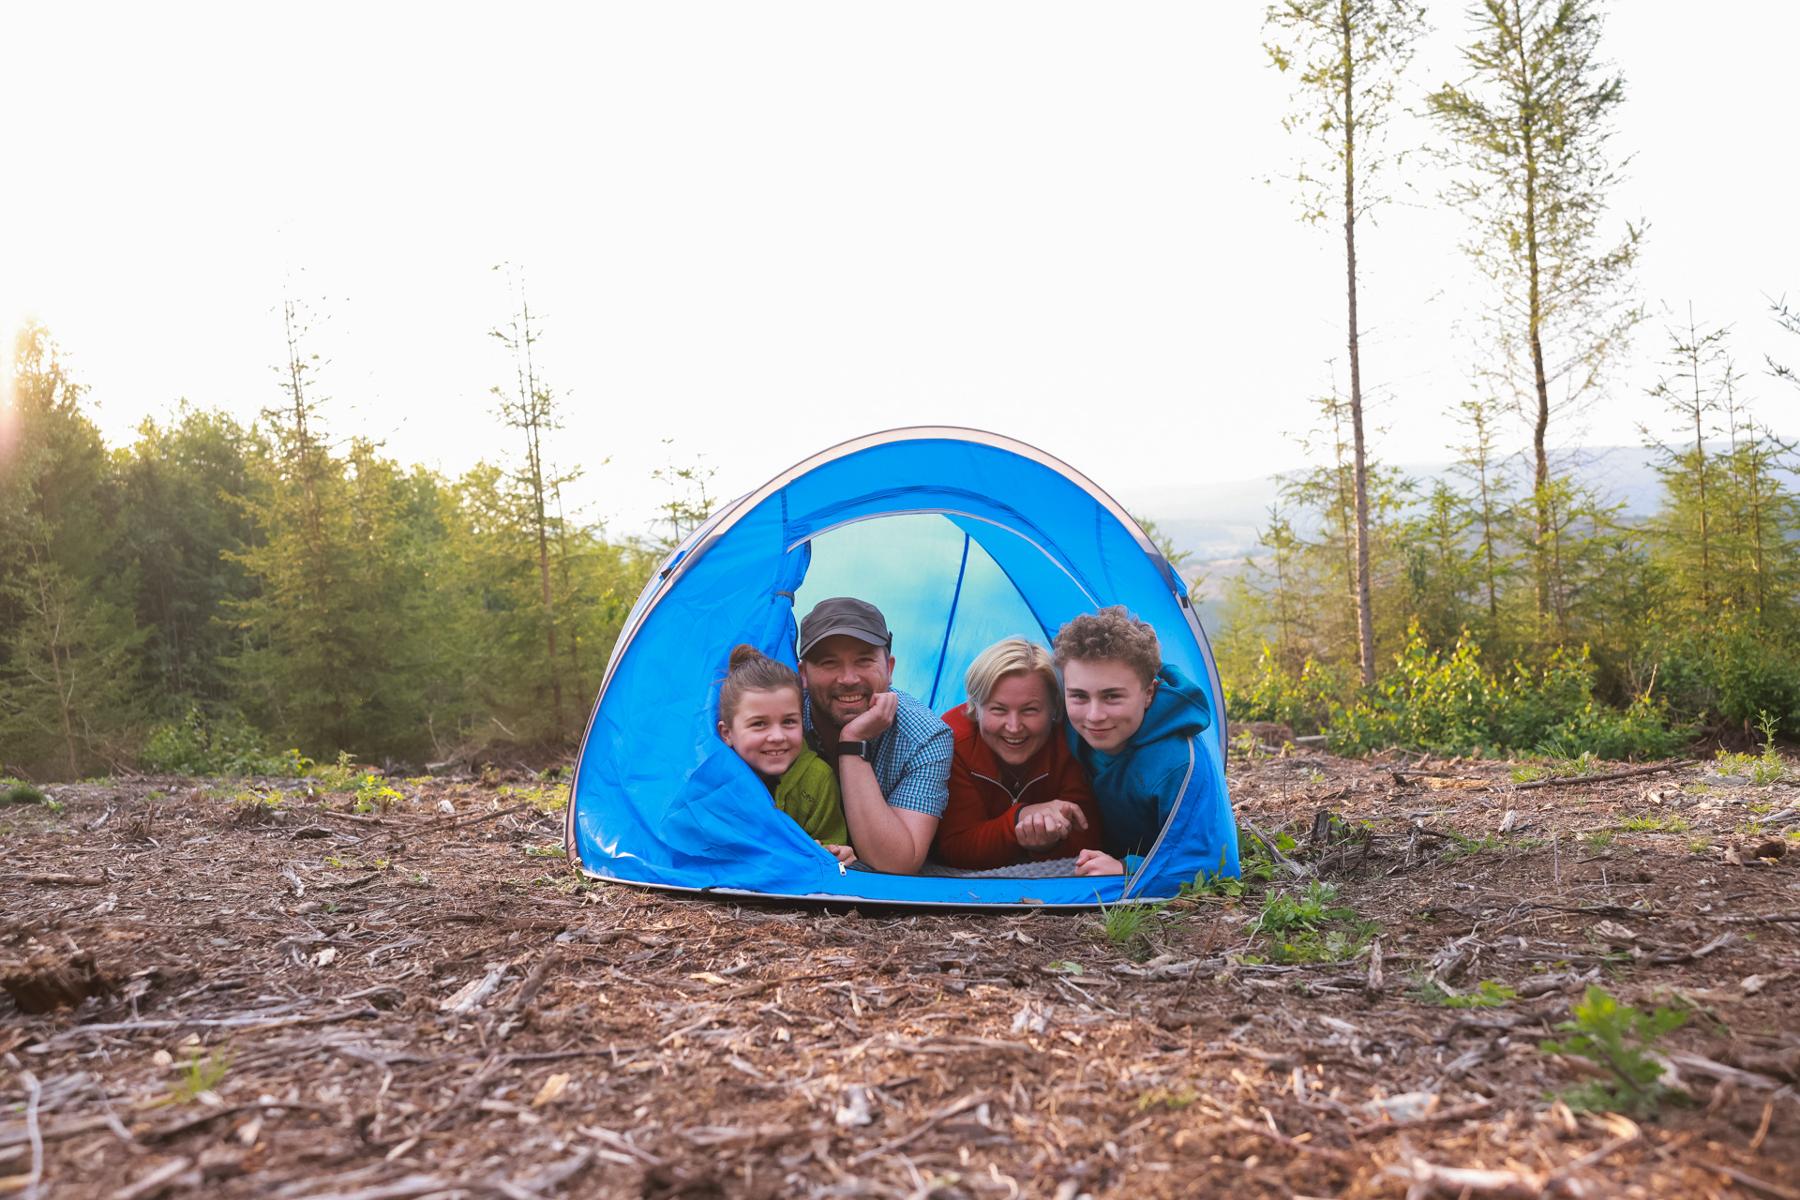 Zwei Kinder und zwei Erwachsene liegen in einem kleinen Zelt. Sie schauen heraus und lächeln. Das Zelt ist blau. Es steht auf einer Fläche, dahinter ist Wald.